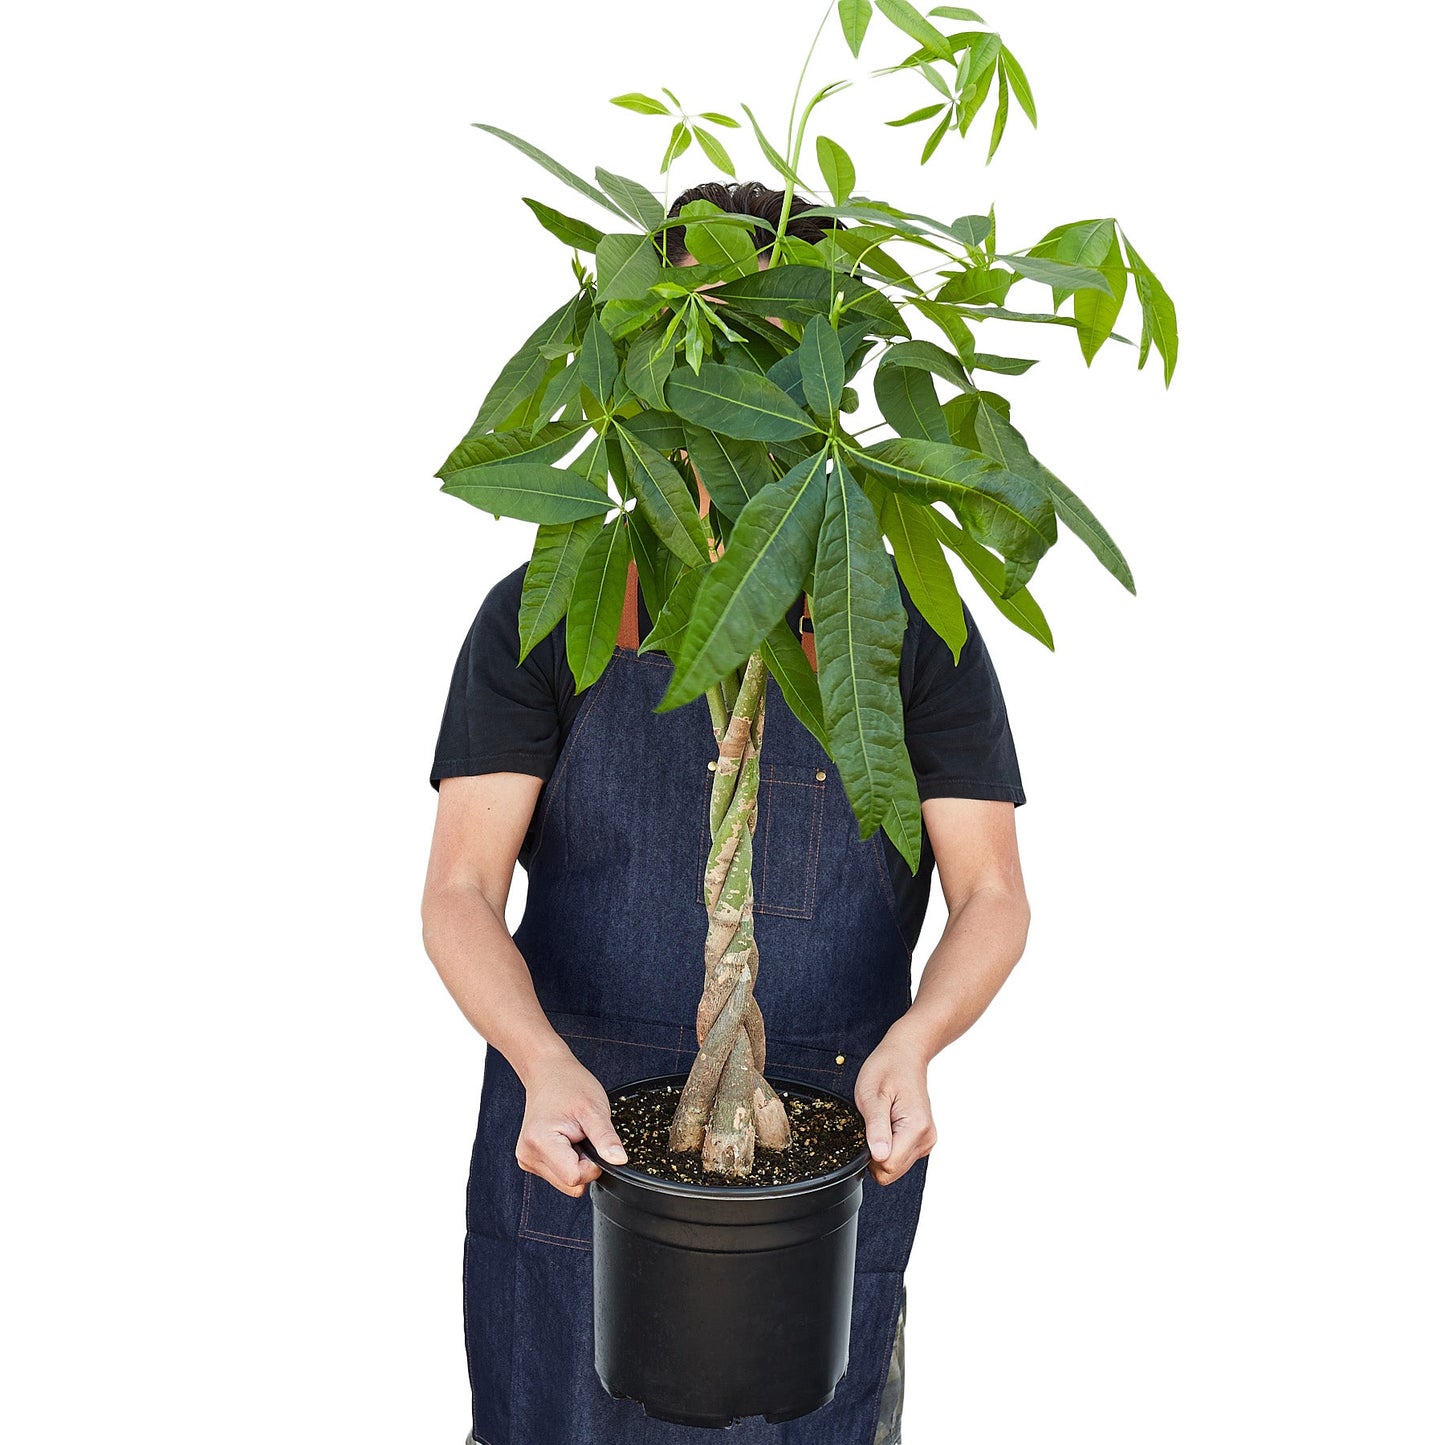 Money Tree 'Guiana Chestnut' Pachira Braid - 10" Pot